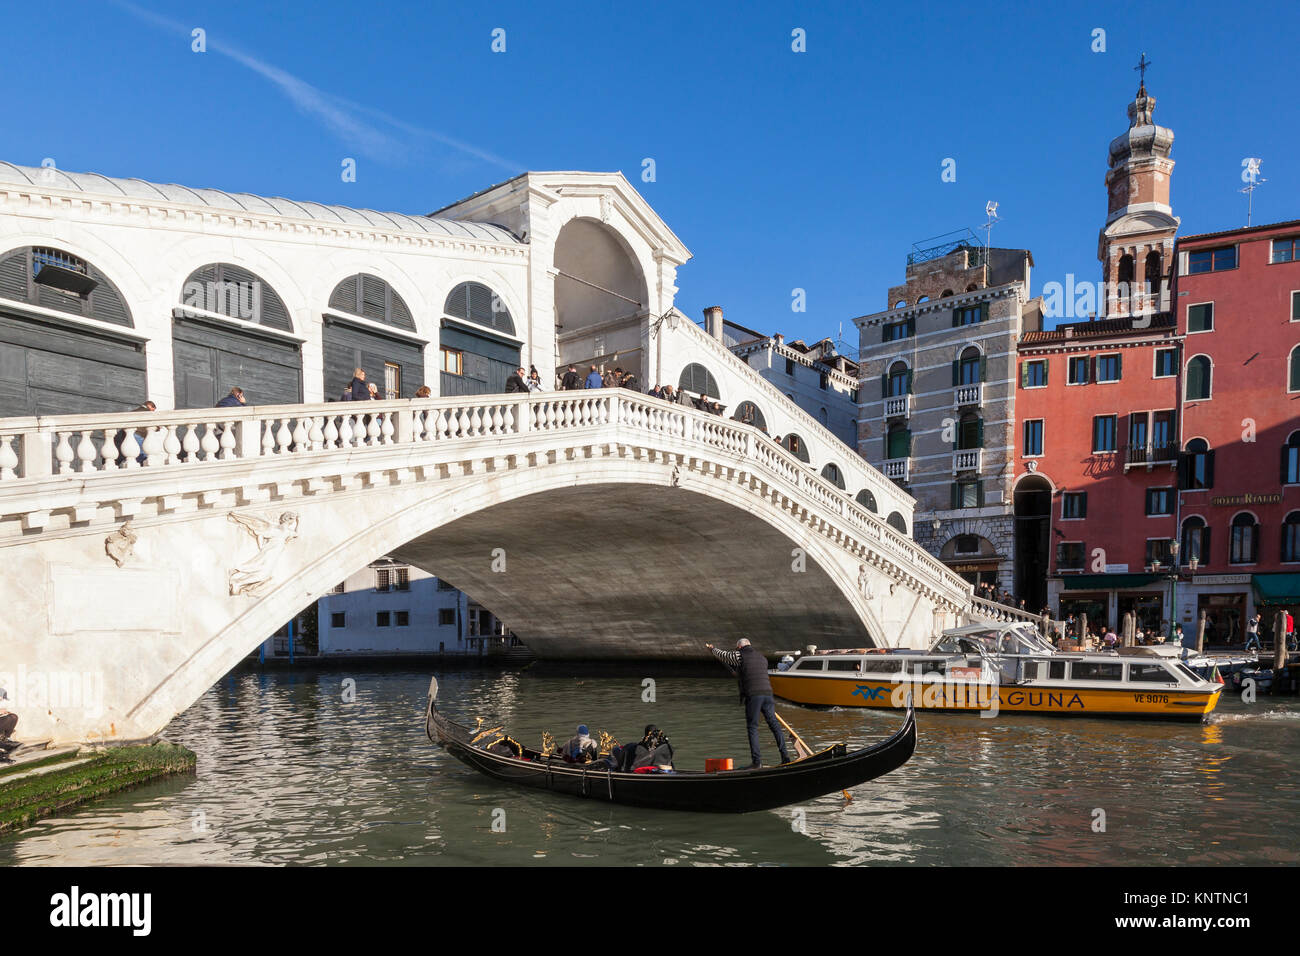 Touristen in einer Gondel und einen Wasserbus Alilaguna Fähren unter der Rialto Brücke, Ponte di Rialto, Canale grande, Venedig, Italien Stockfoto